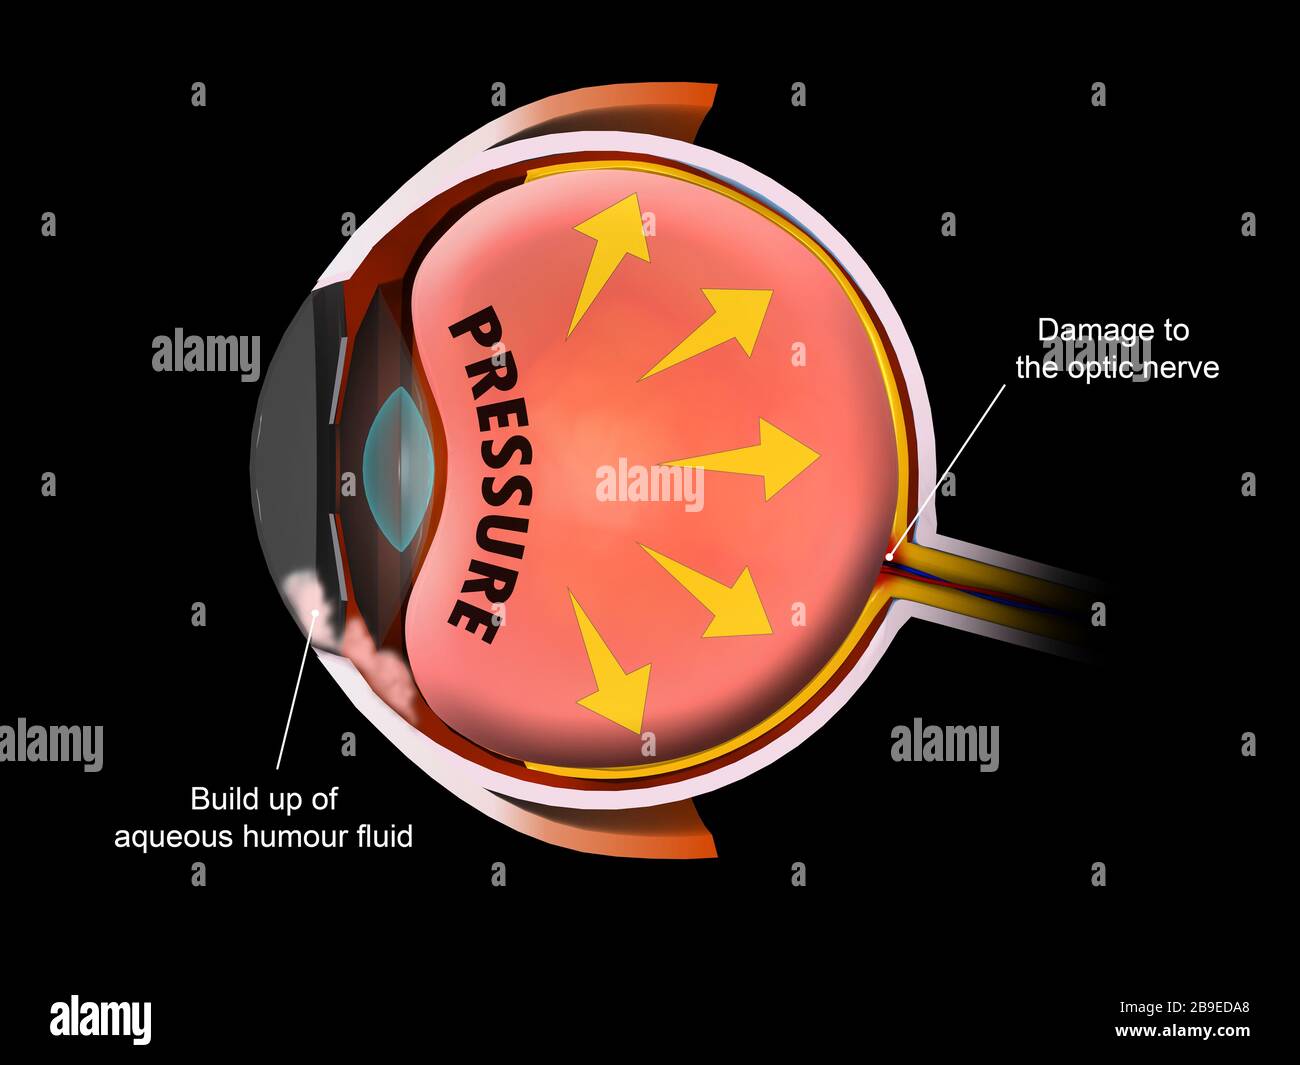 Illustrazione medica che mostra l'aumento della pressione nel bulbo oculare, che porta al glaucoma. Foto Stock